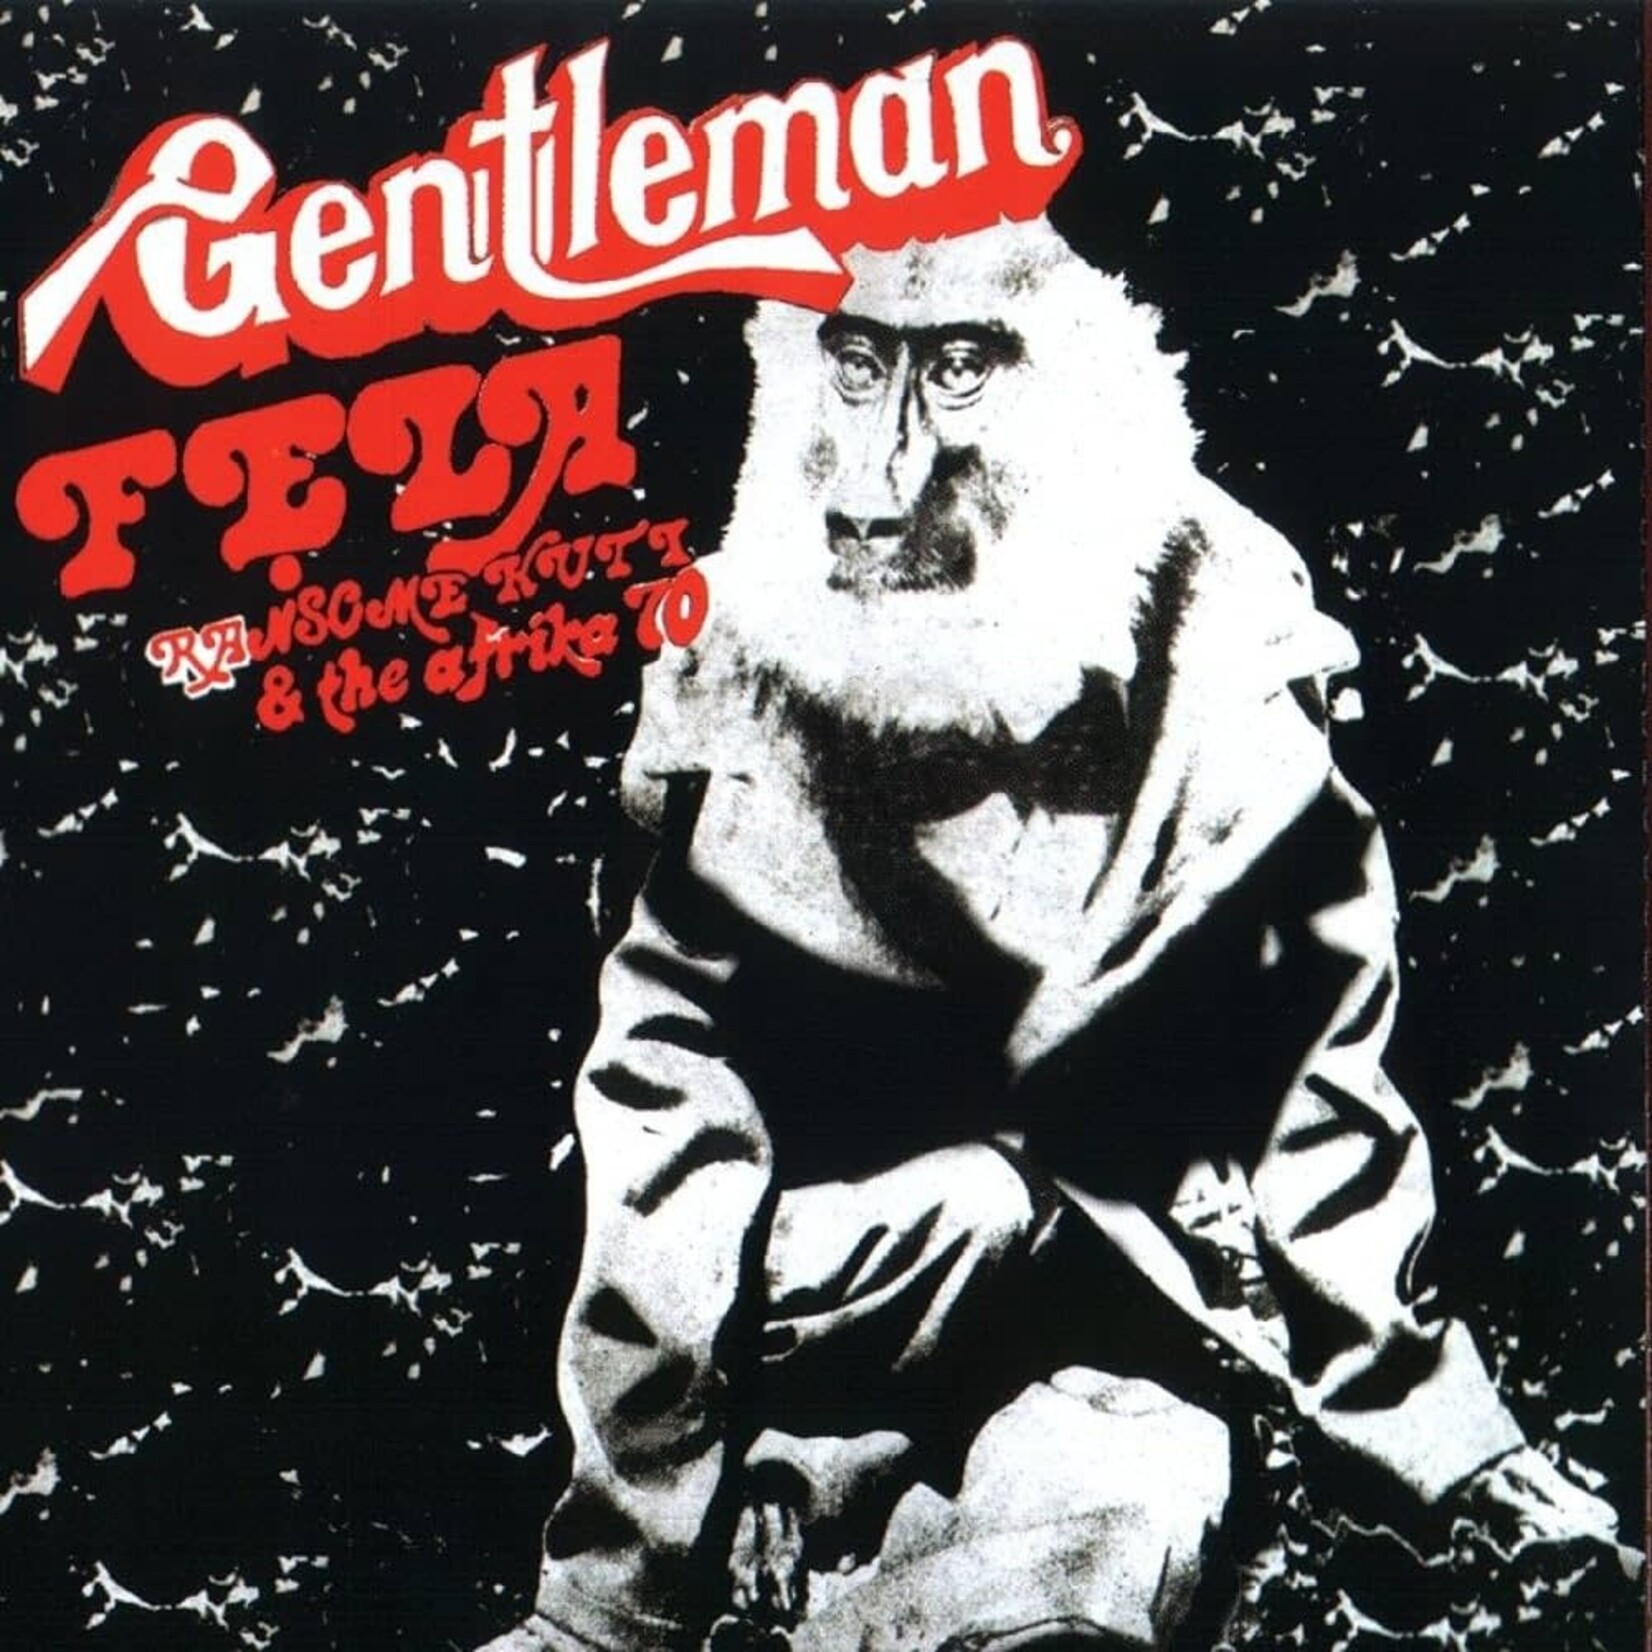 [New] Fela Kuti - Gentleman (50th Anniversary, 'Igbo Smoke' vinyl)